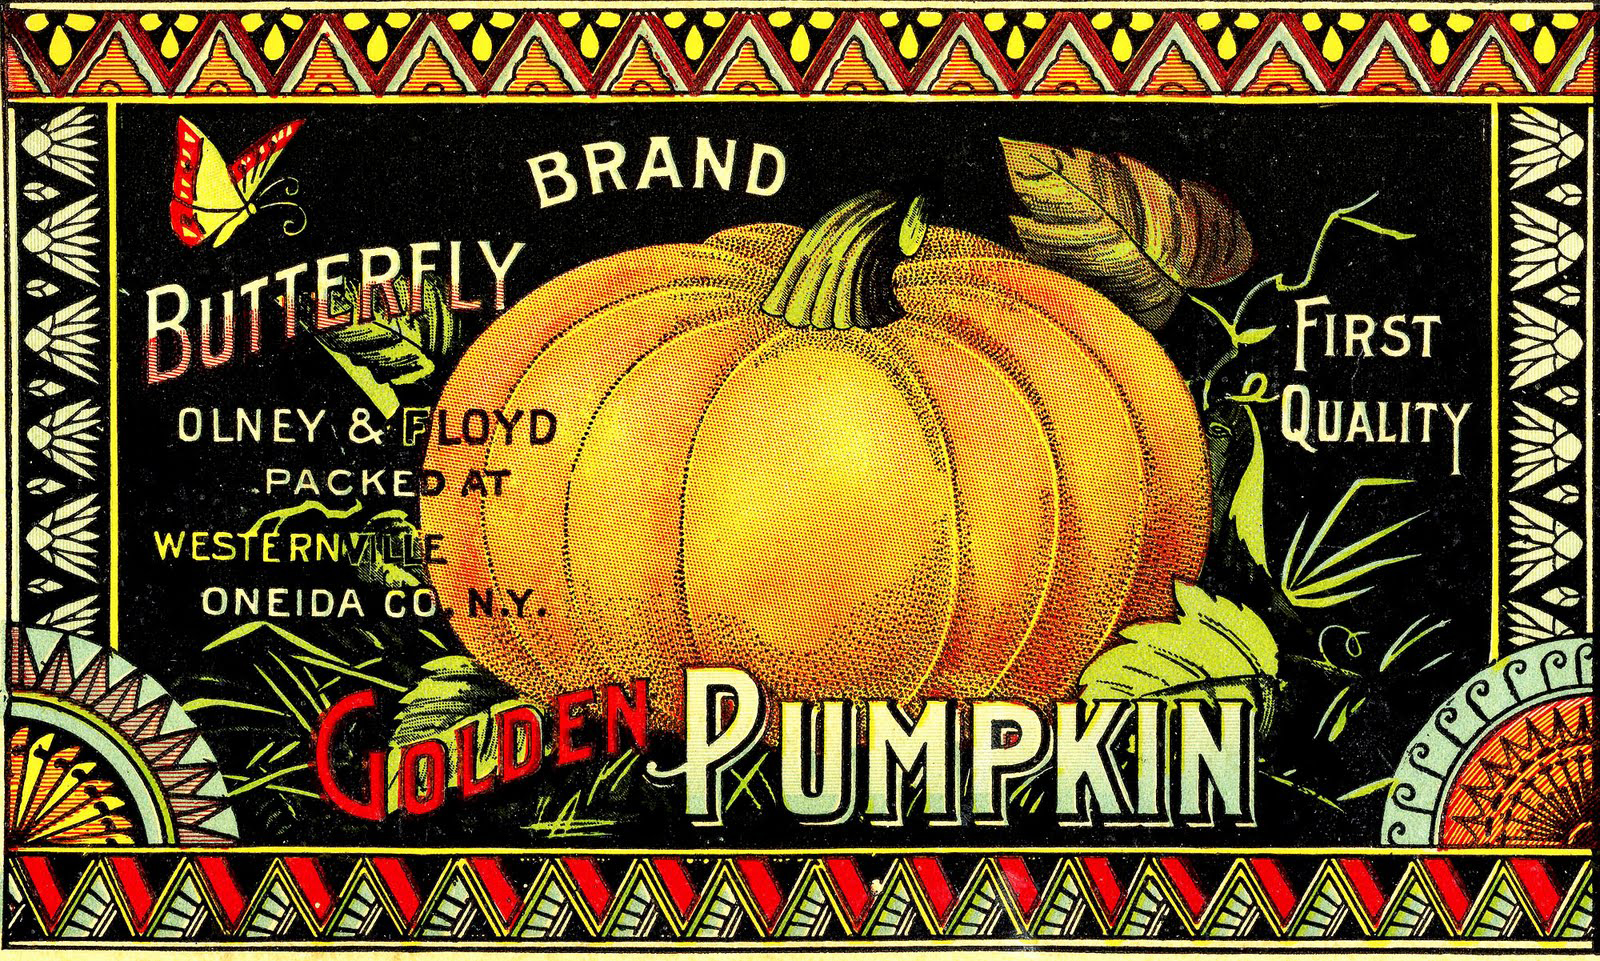 pumpkin label vintage image